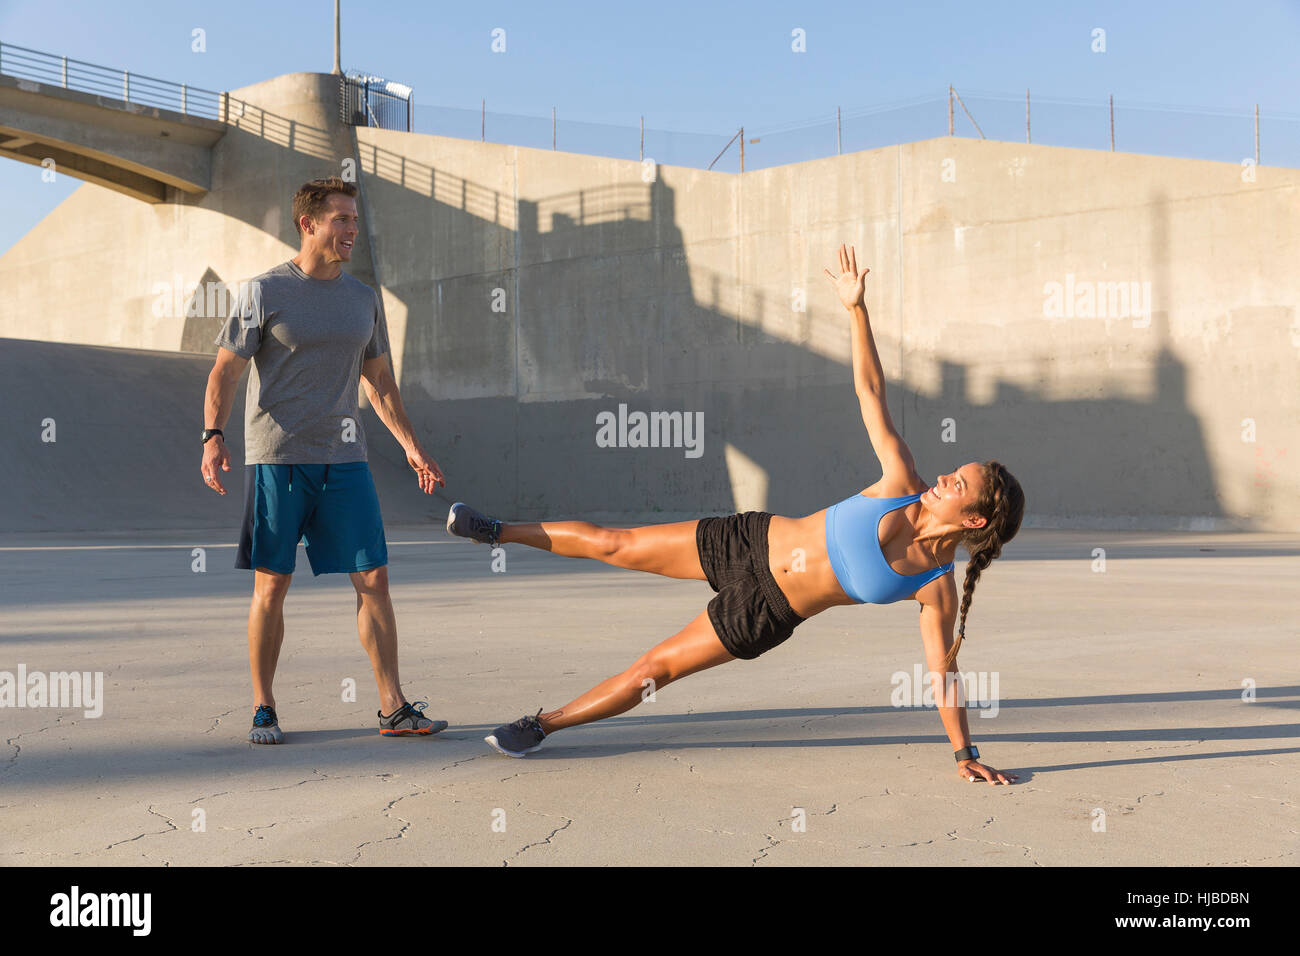 Atleta maschio aiutando un amico con allenamento, Van Nuys, CALIFORNIA, STATI UNITI D'AMERICA Foto Stock